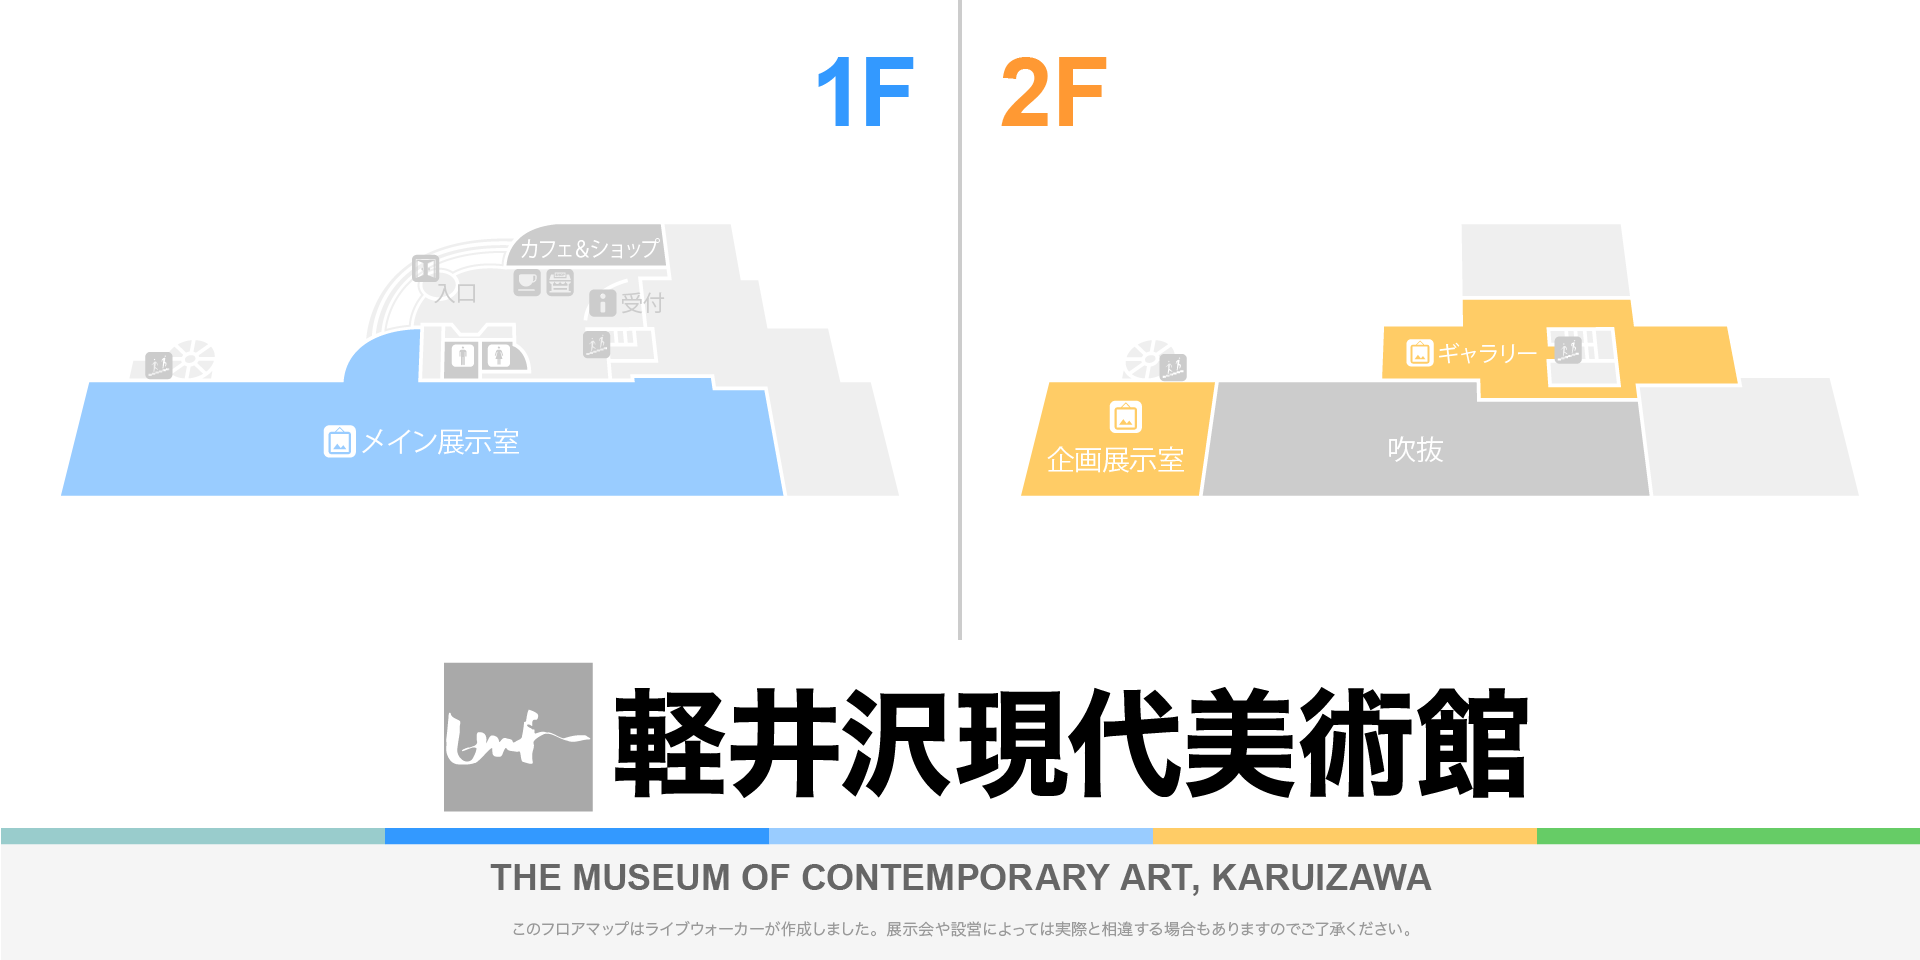 軽井沢現代美術館のフロアマップ